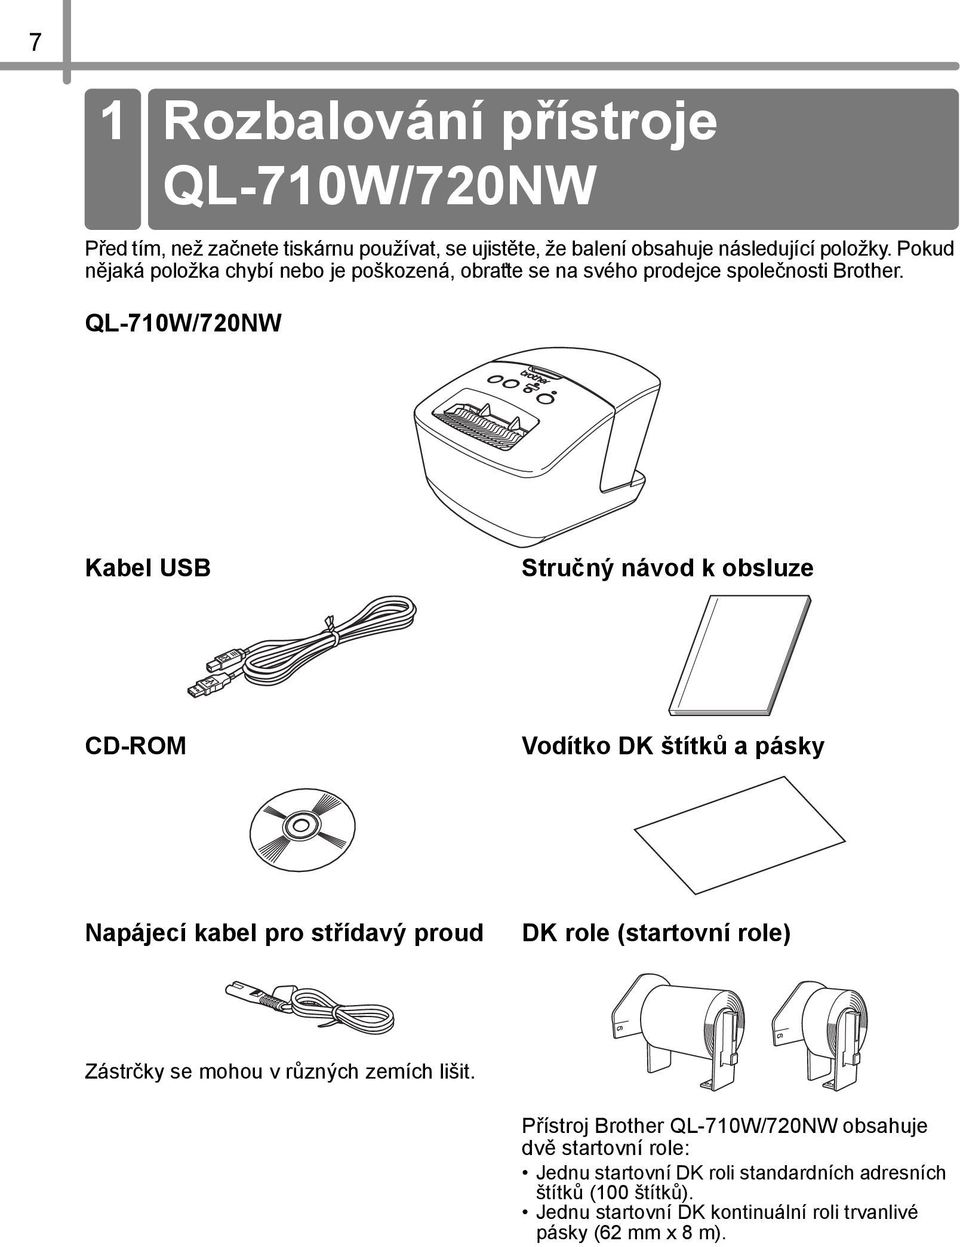 QL-710W/720NW Kabel USB Stručný návod k obsluze CD-ROM Vodítko DK štítků a pásky Napájecí kabel pro střídavý proud DK role (startovní role) Zástrčky se